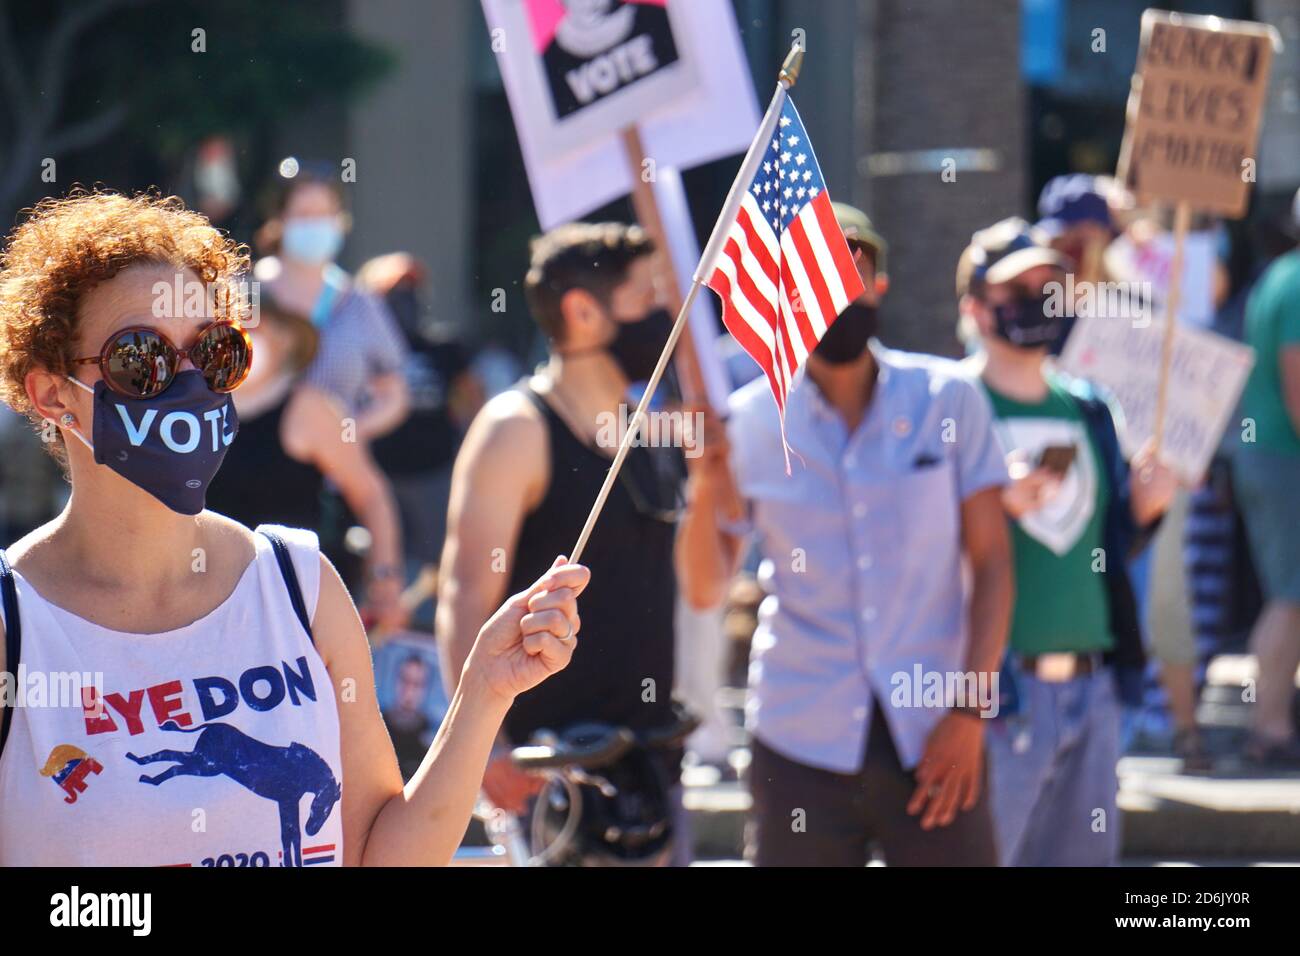 17. Oktober 2020. Marsch der Frauen in San Francisco. Biden Voter trägt Stimmmaske, ein Bye Don T-Shirt und hält kurz vor der US-Wahl eine amerikanische Flagge. Stockfoto